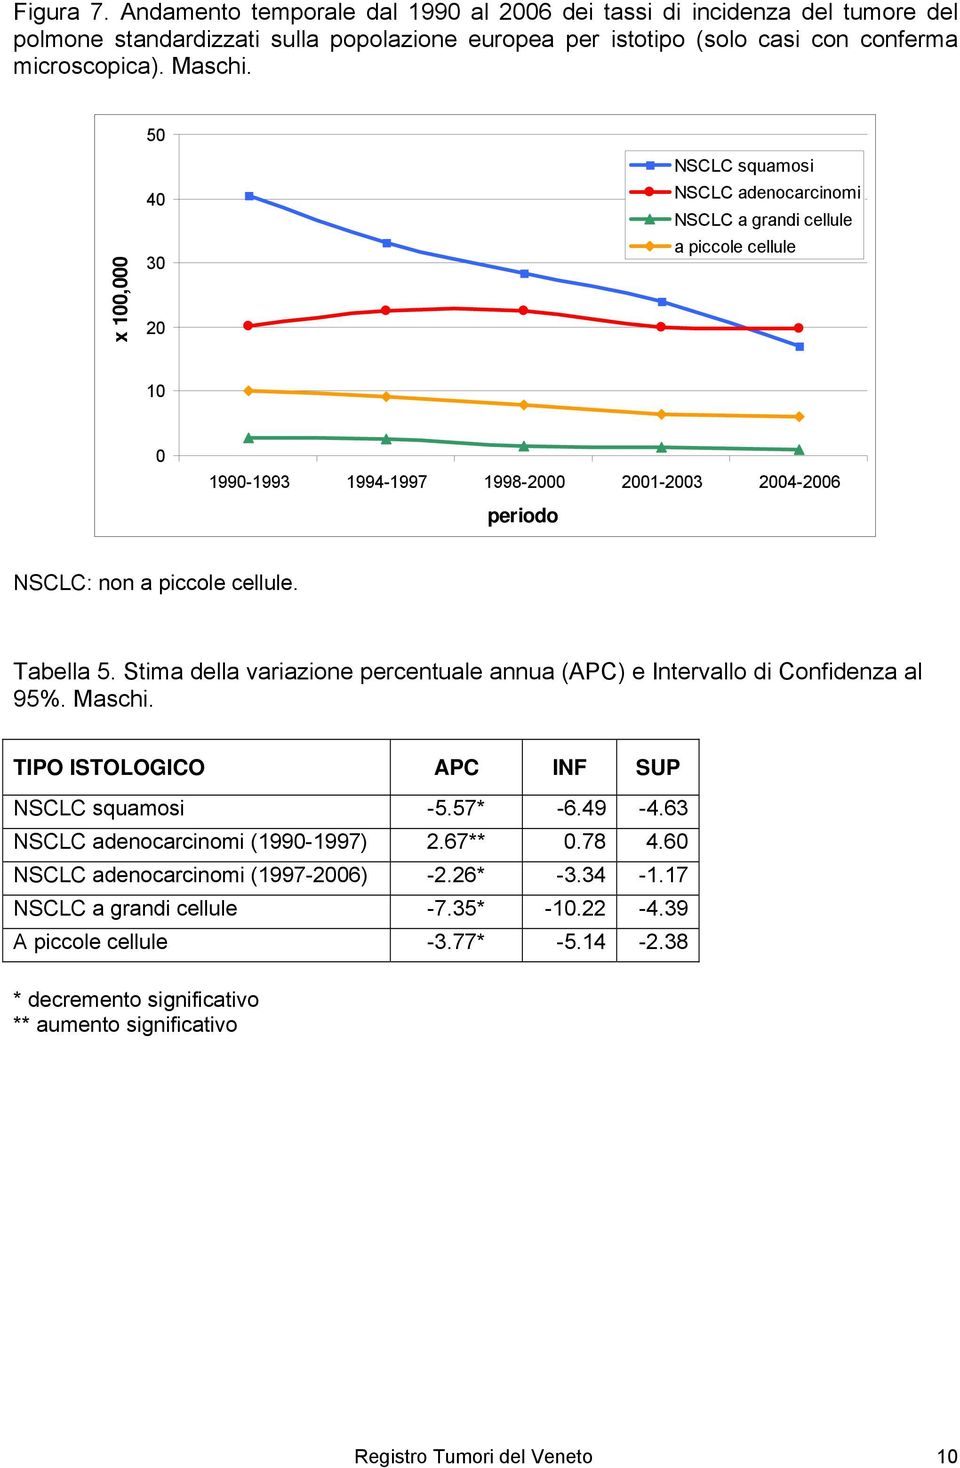 Tabella 5. Stima della variazione percentuale annua (APC) e Intervallo di Confidenza al 95%. Maschi. TIPO ISTOLOGICO APC INF SUP NSCLC squamosi -5.57* -6.49-4.63 NSCLC adenocarcinomi (1990-1997) 2.